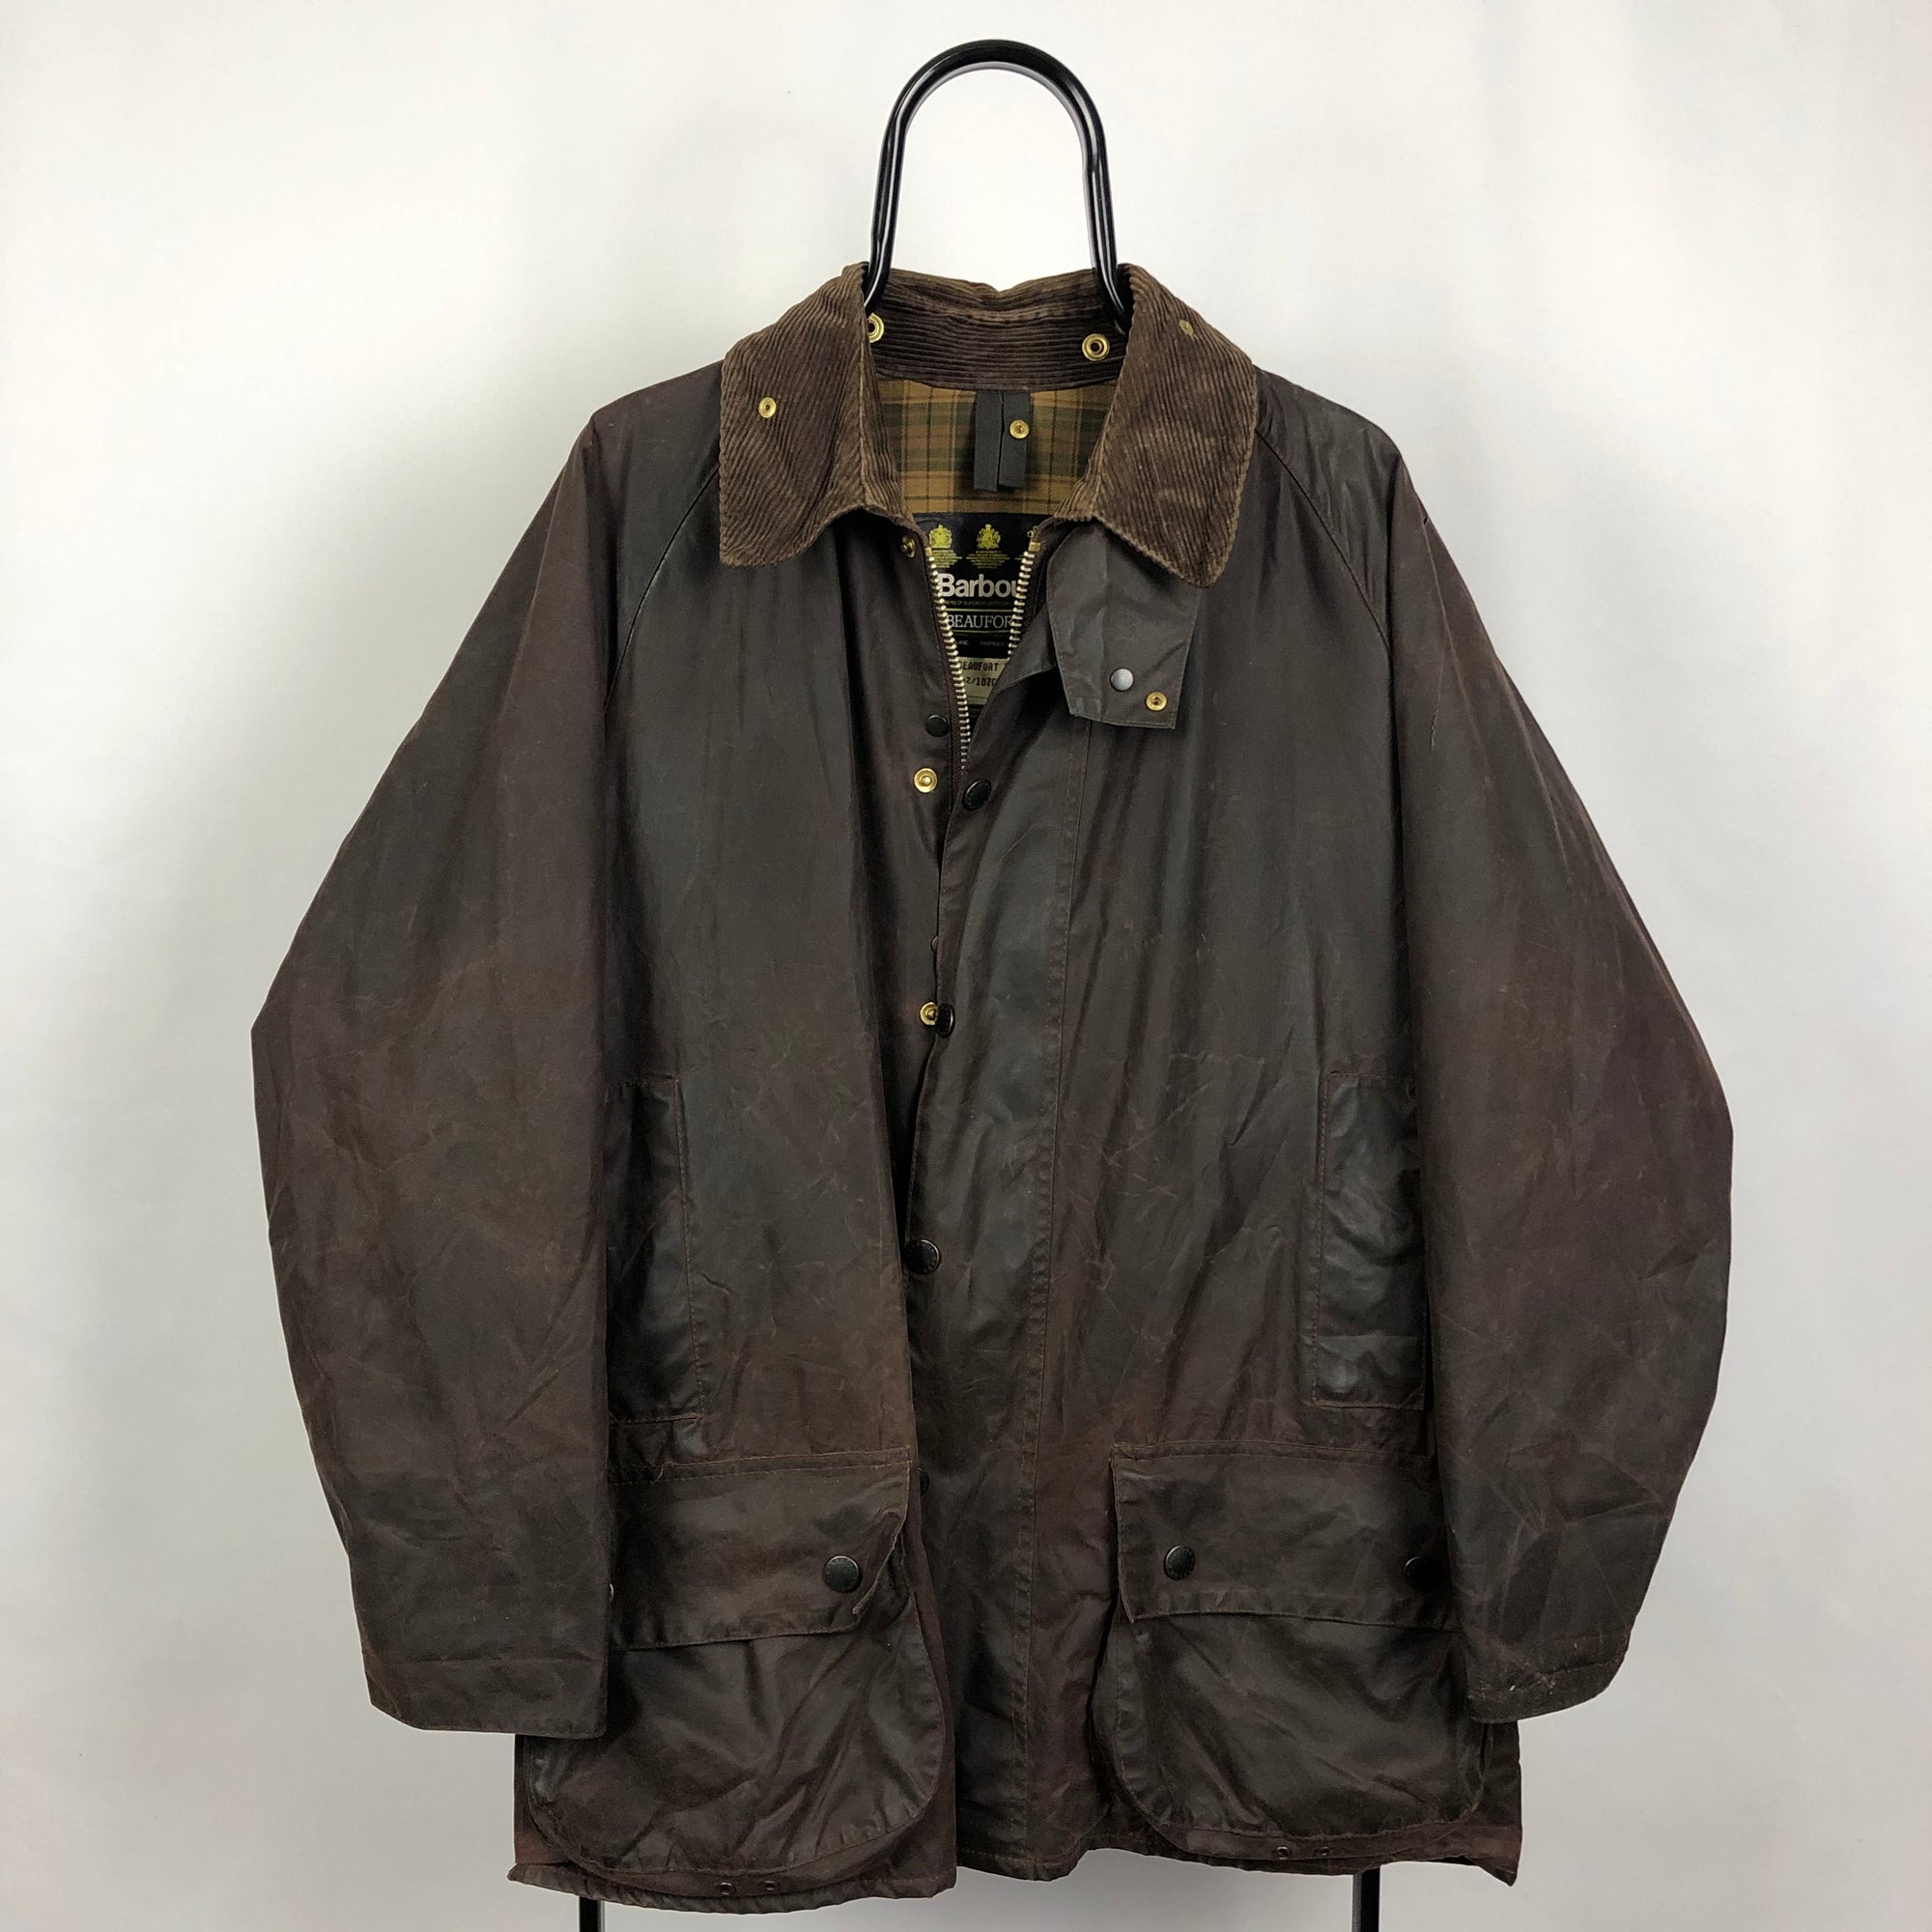 Vintage Barbour Wax Jacket in Brown - Men's Large/Women's XL